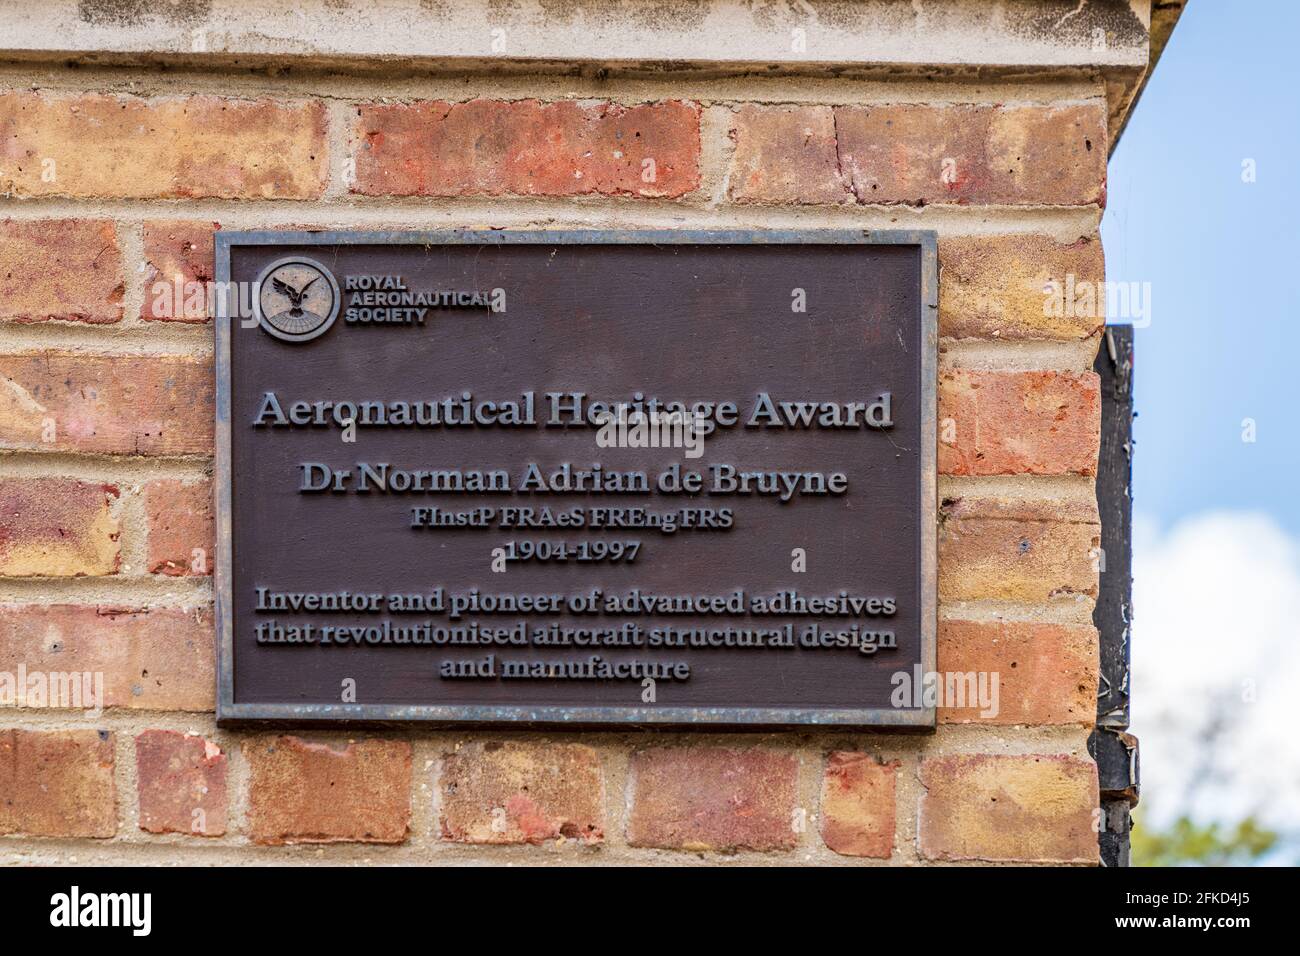 Aeronautical Heritage Award für Dr. Norman Adrian de Bruyne Cambridge - Pionier in der Verwendung von Strukturklebstoffen in der Flugzeugproduktion. Stockfoto